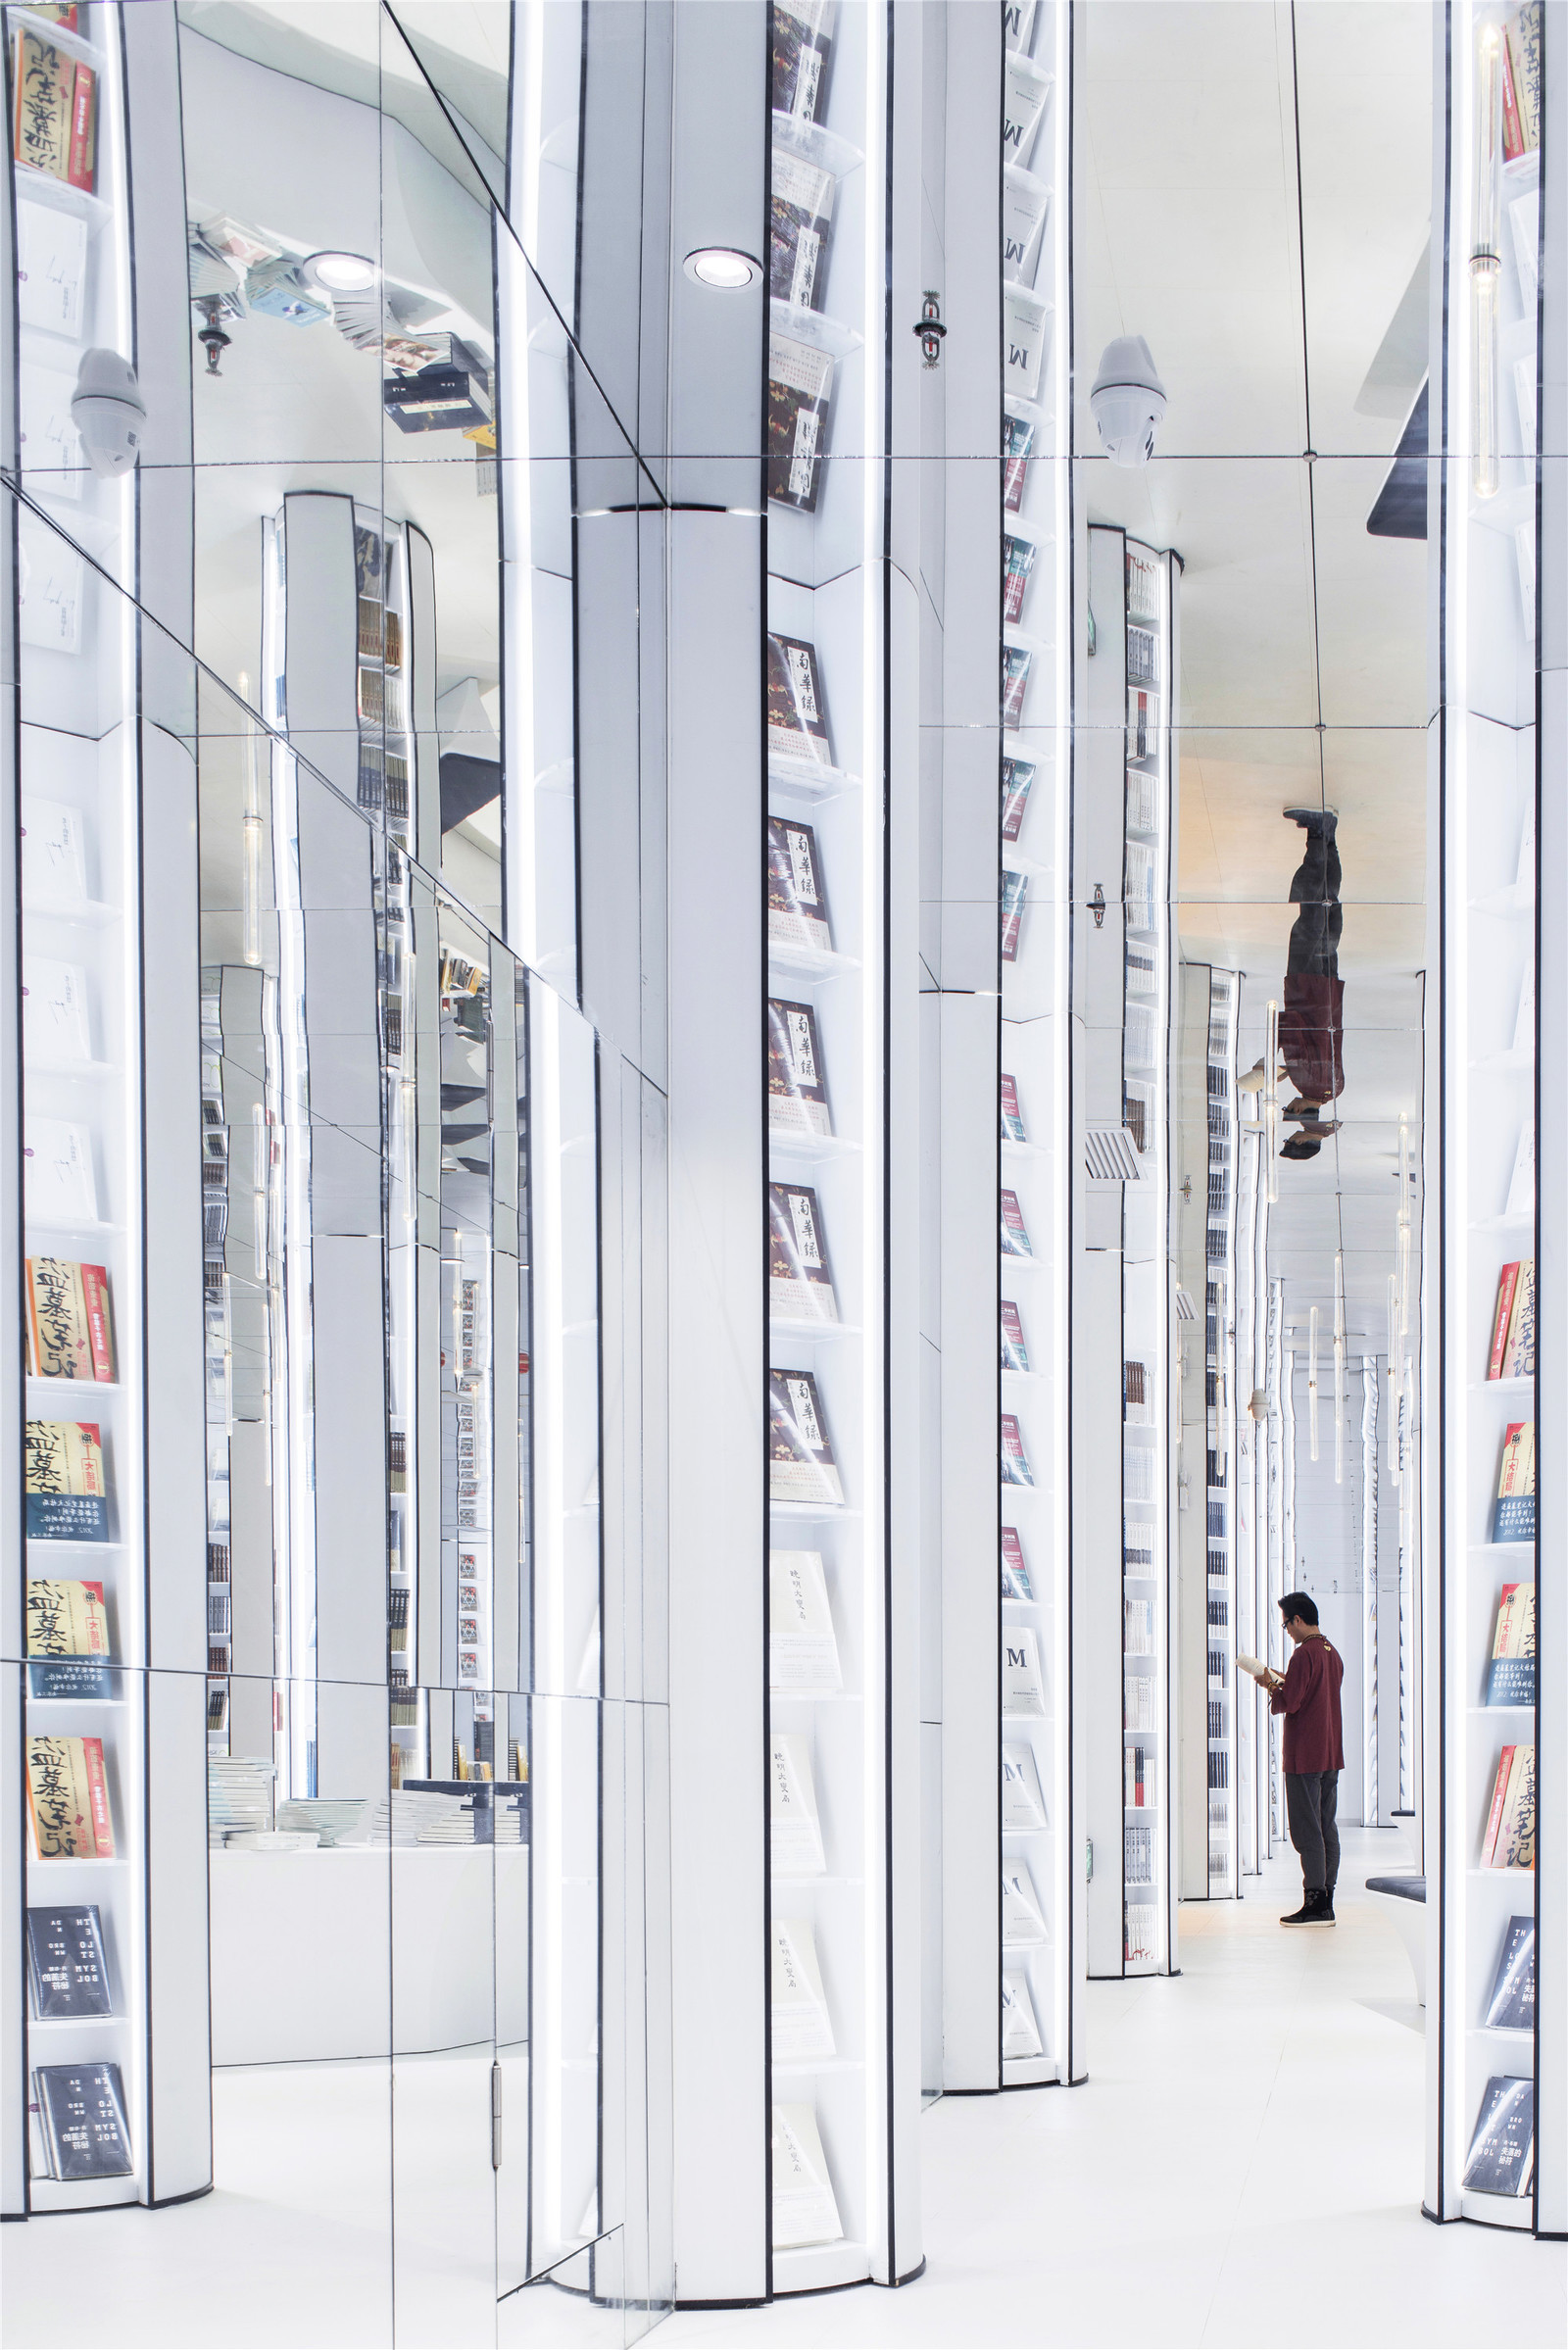 Безумие книжного магазина в Китае